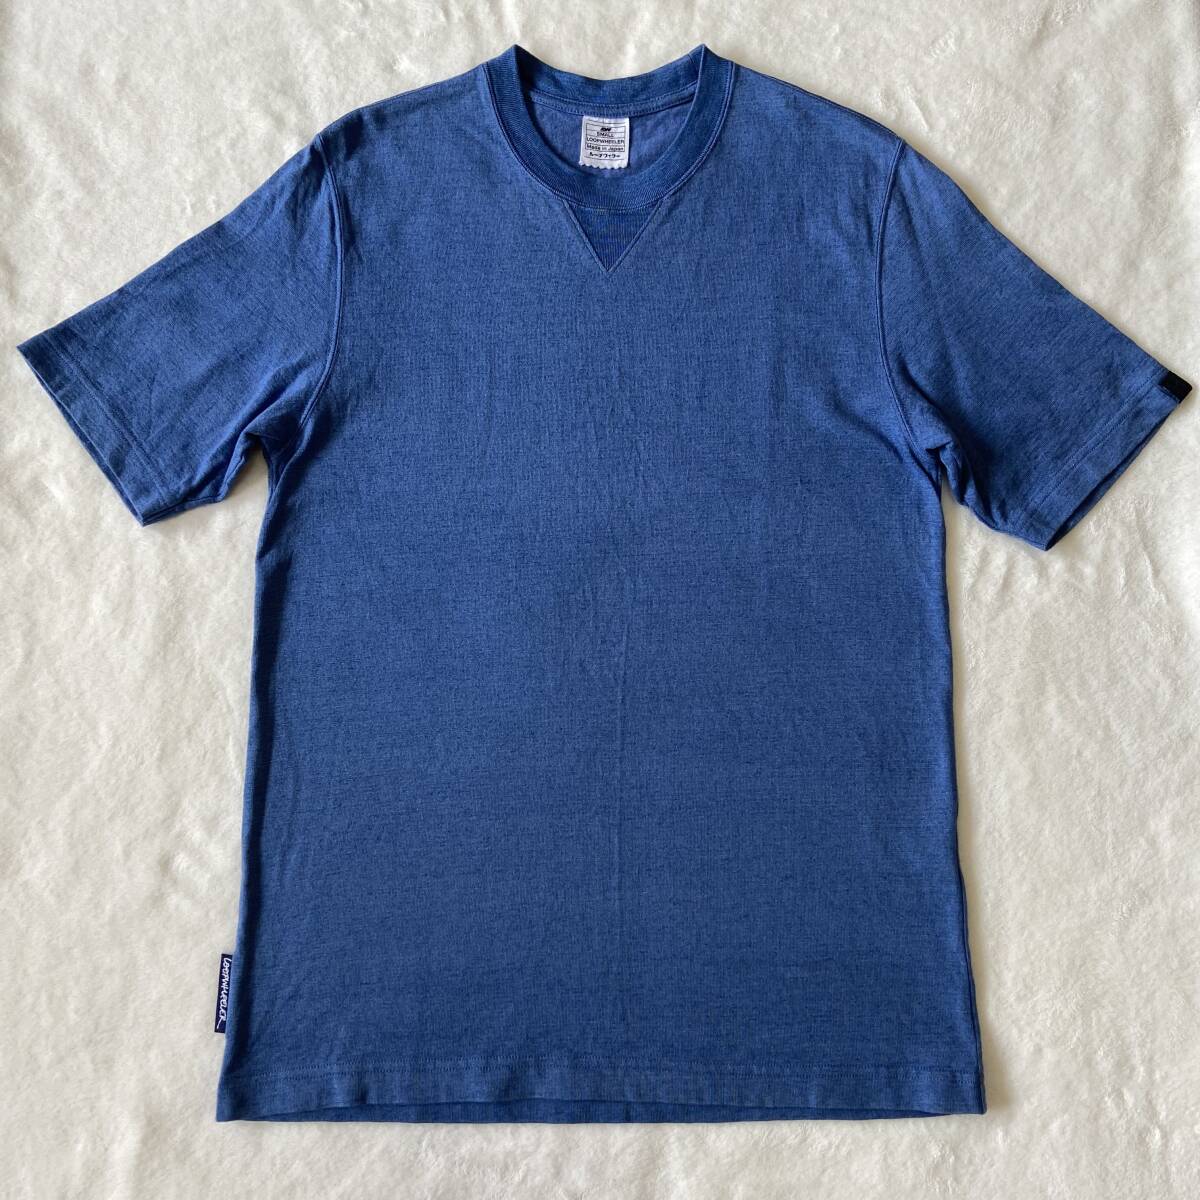 ループウィラー 半袖クルーネックTシャツ LOOPWHEELER ブルーインディゴ INDIGOWHEELER S 送料無料の画像1